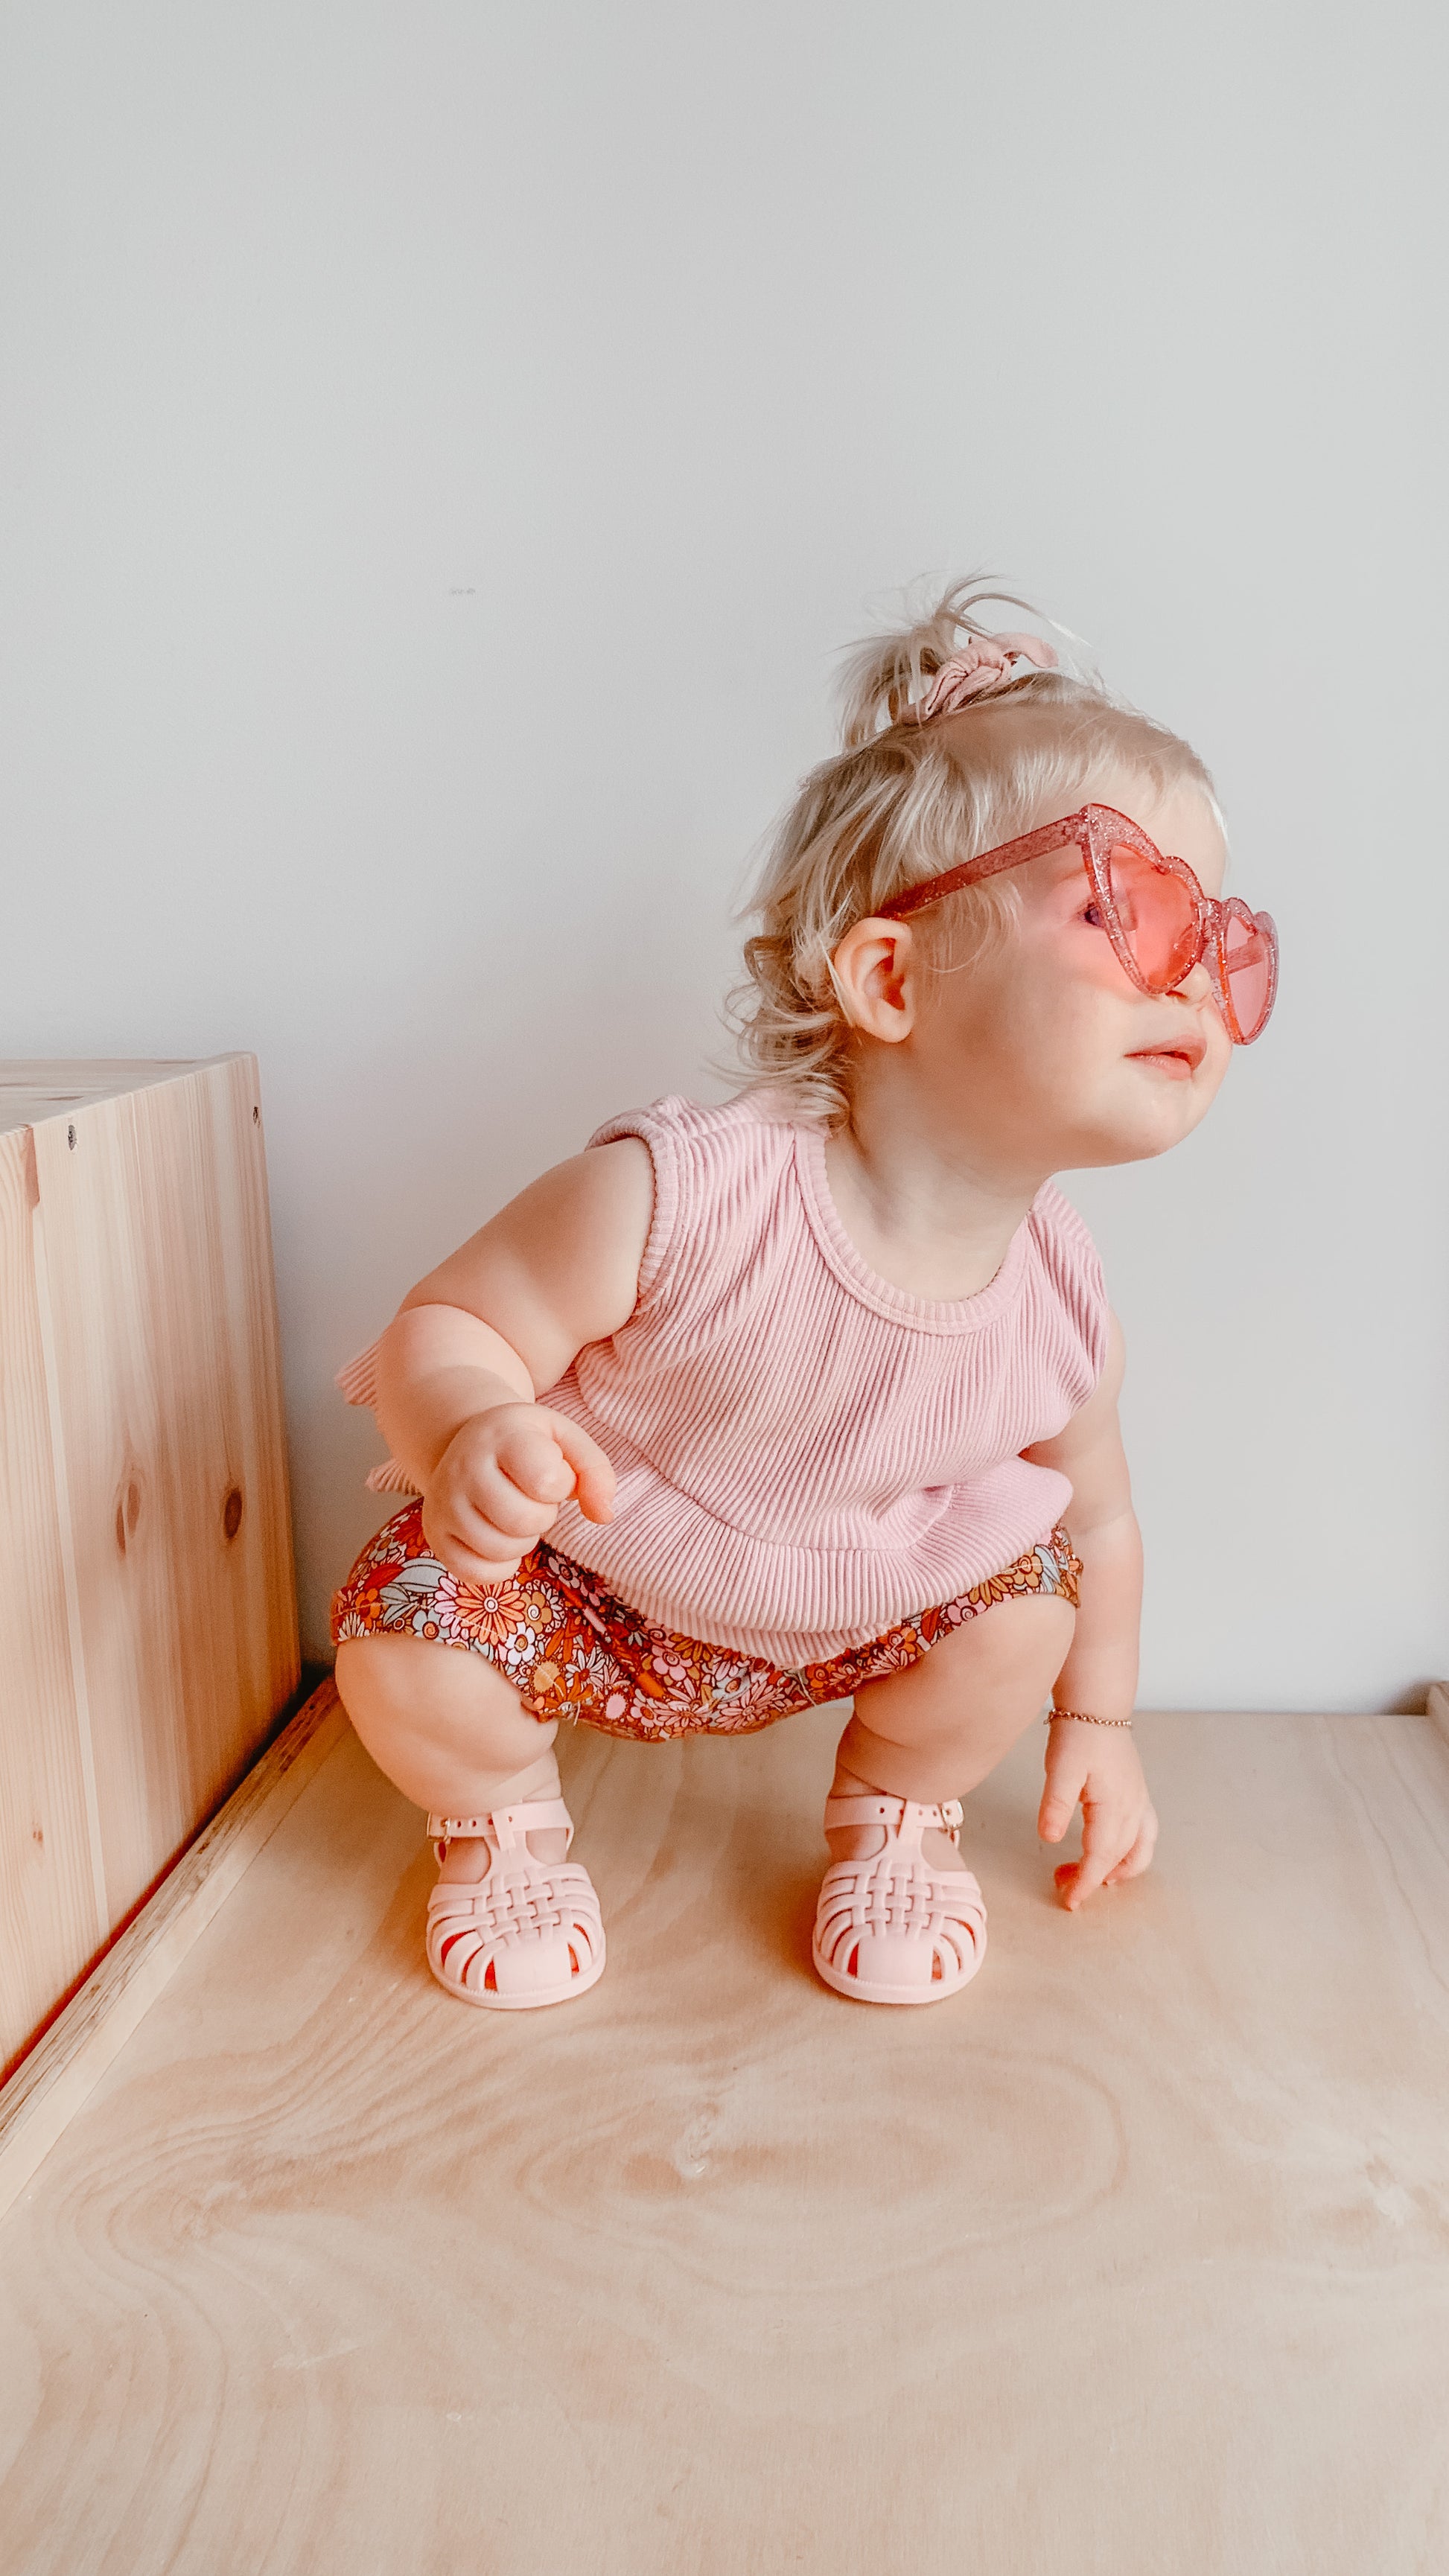 Pink Glitter Heart Shape Sunglasses | Sadie Baby